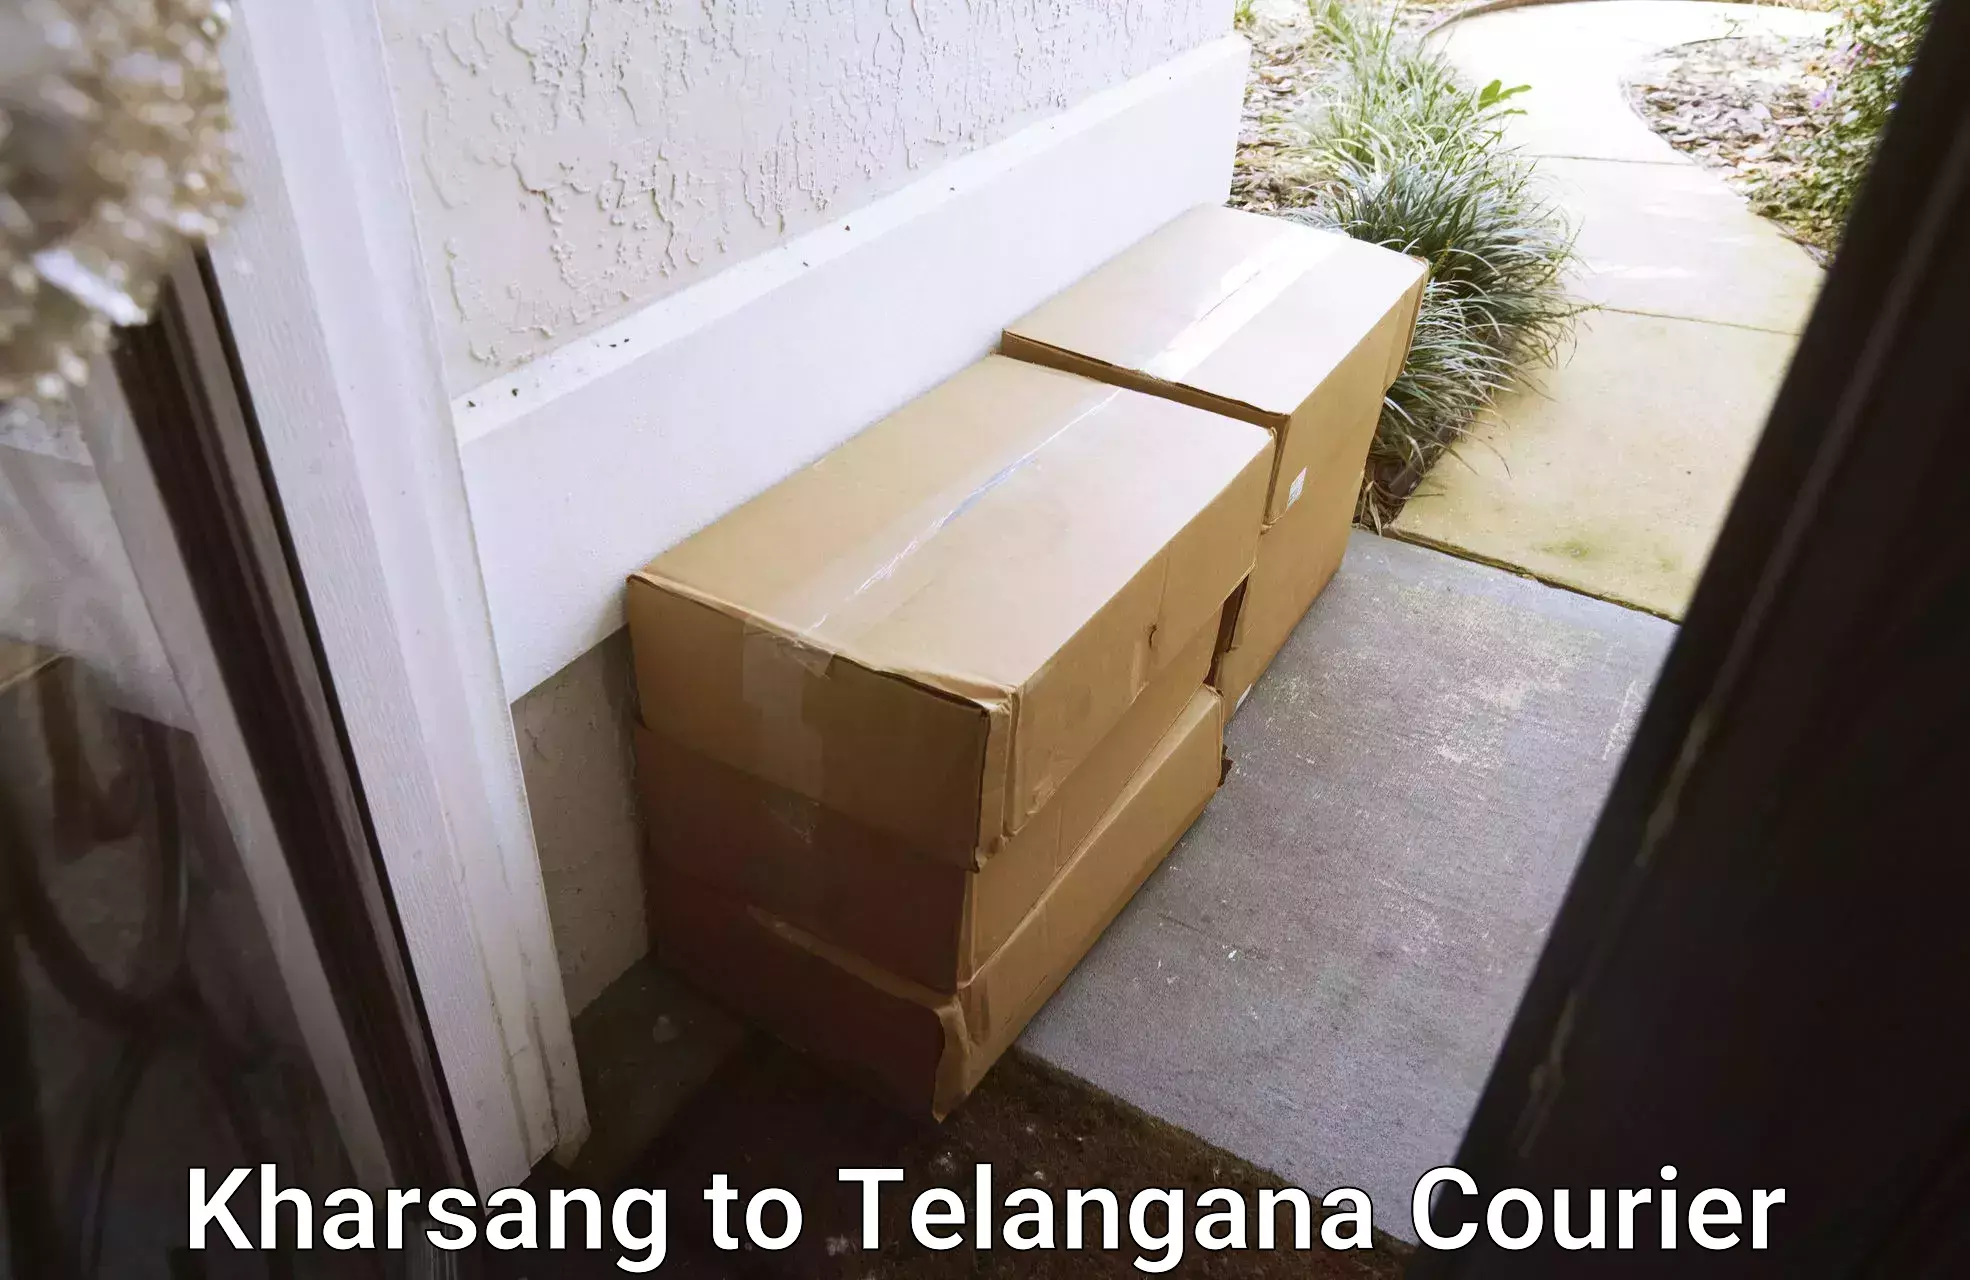 Doorstep delivery service Kharsang to Shamshabad